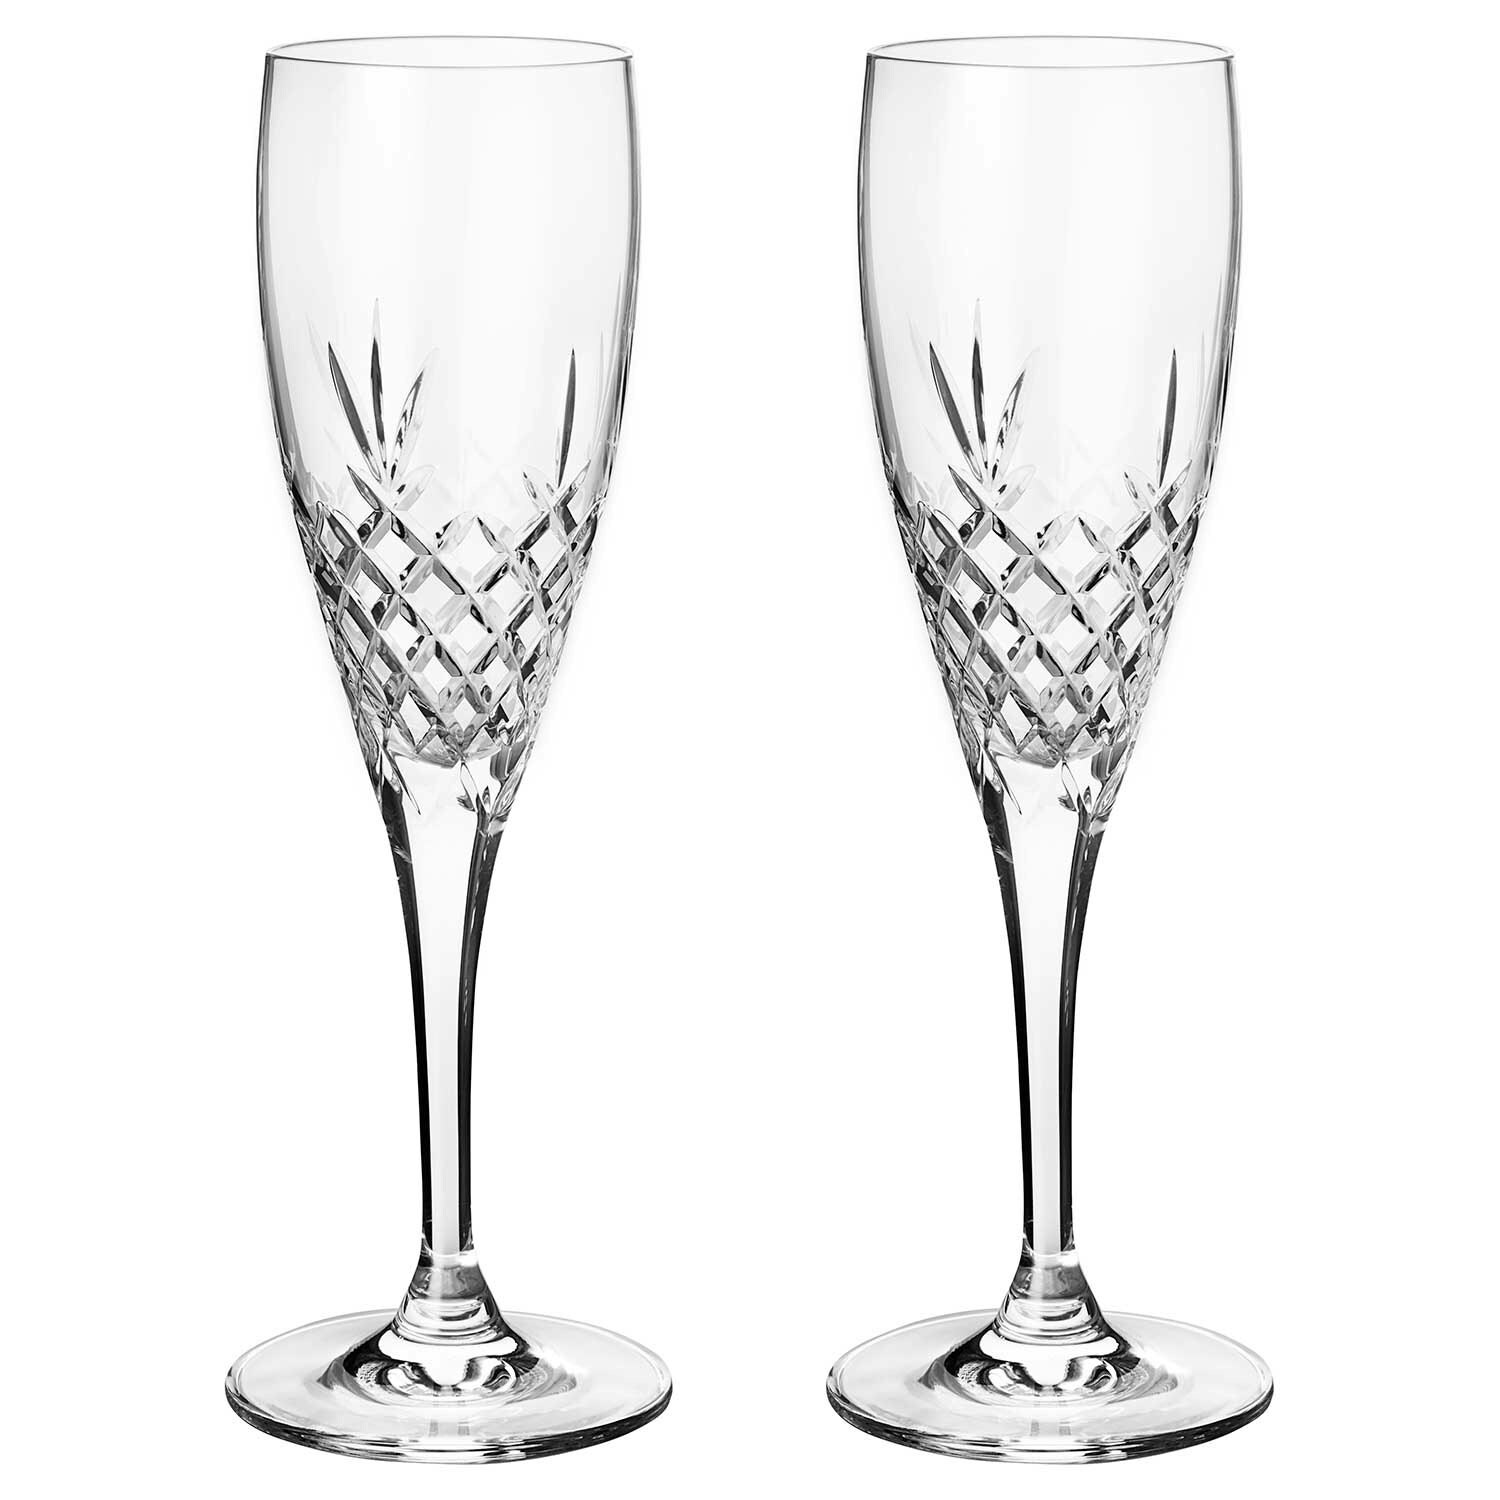 https://royaldesign.com/image/2/frederik-bagger-crispy-celebration-champagne-glass-23-cl-2-pcs-0